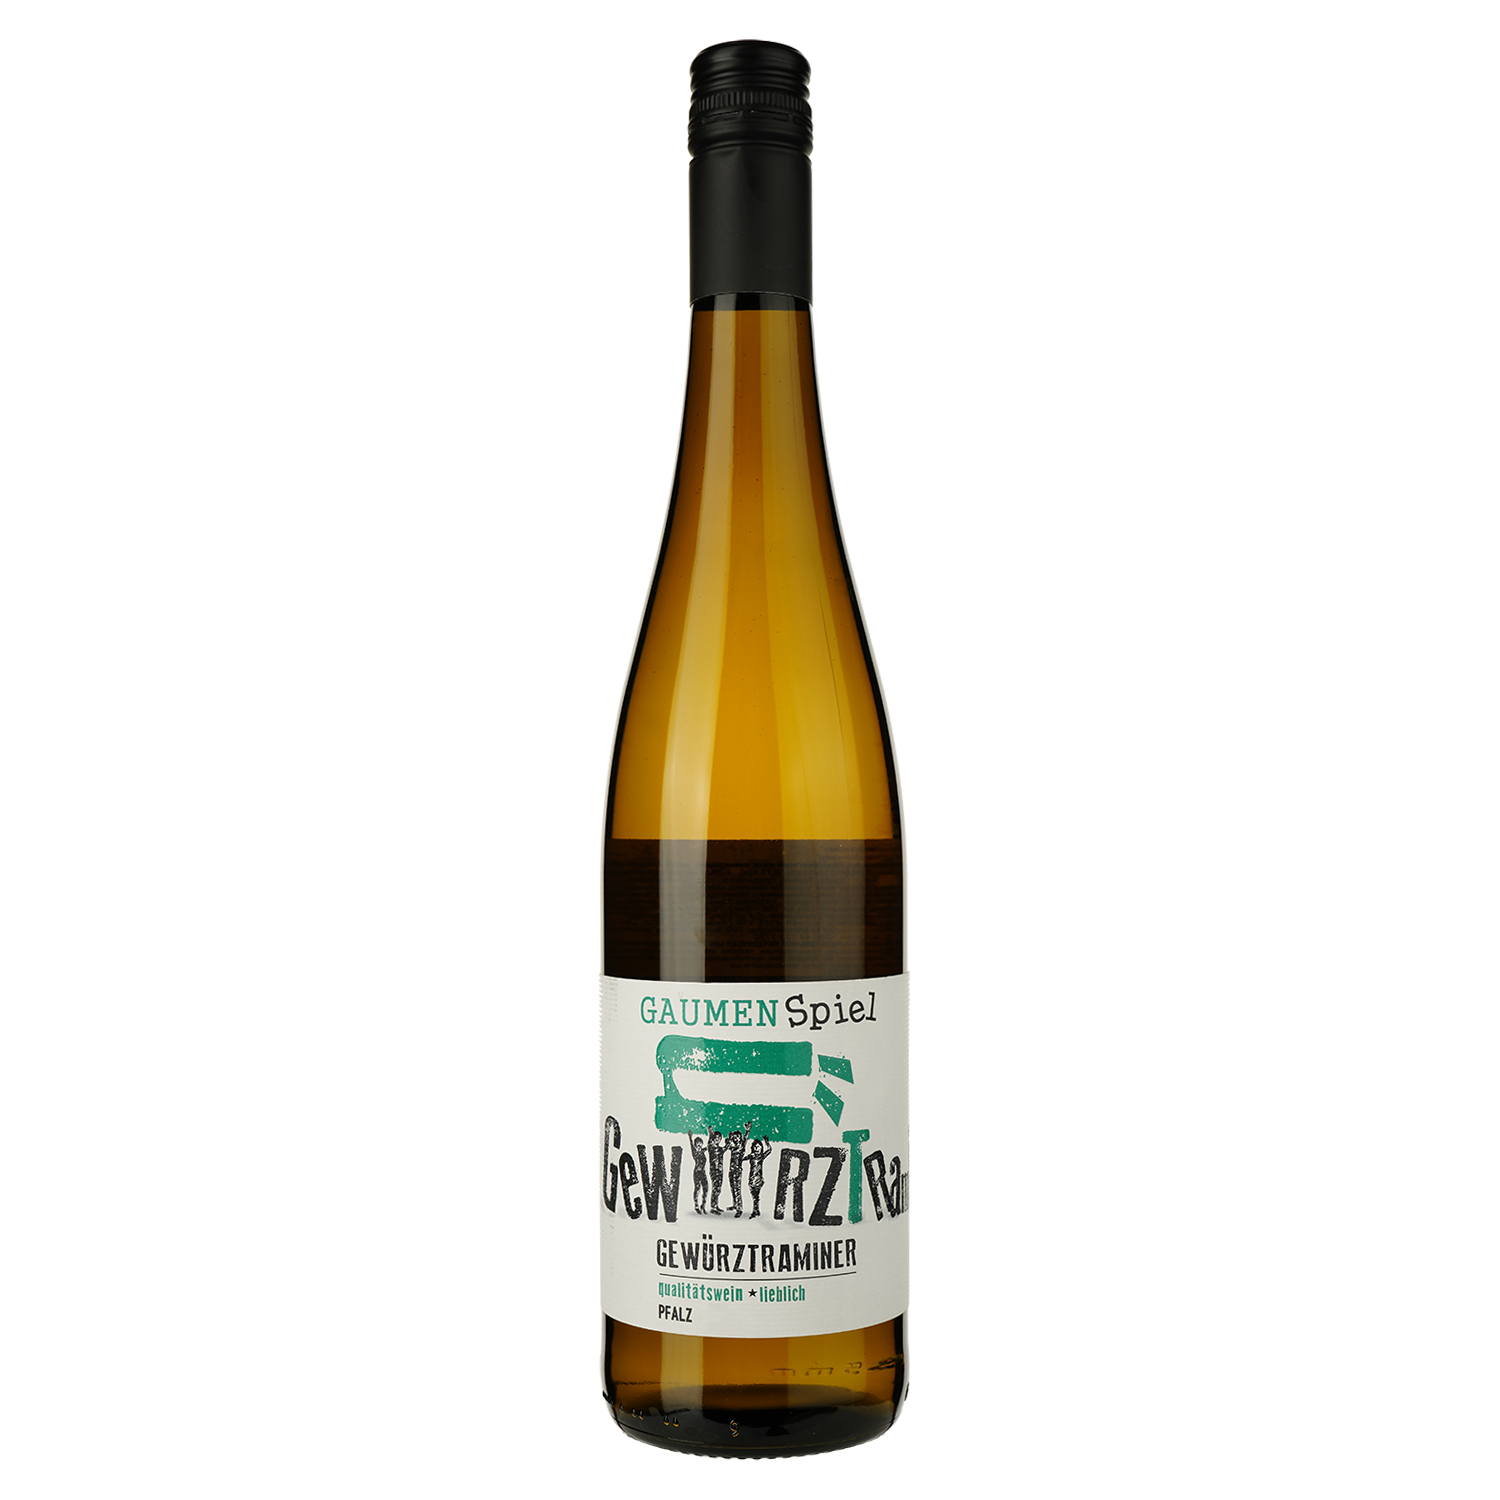 Вино Gaumenspiel Gewürztraminer, белое, полусладкое, 0,75 л - фото 1